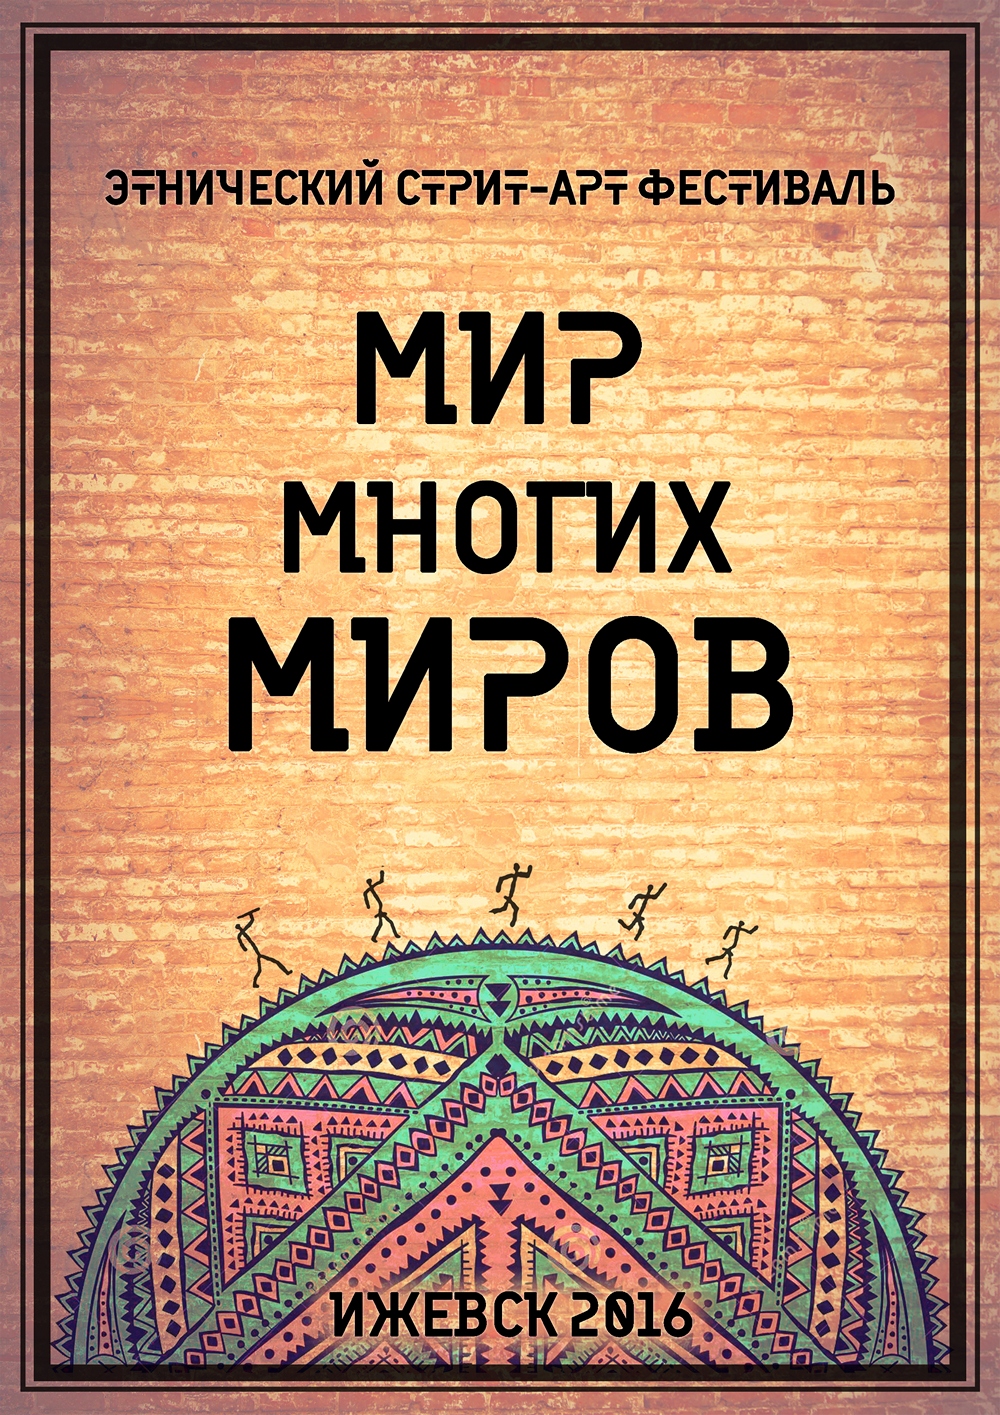 этнический фестиваль стрит-арта «Мир Многих Миров» в Ижевске в рамках Года культуры, объявленного в России в 2016 году